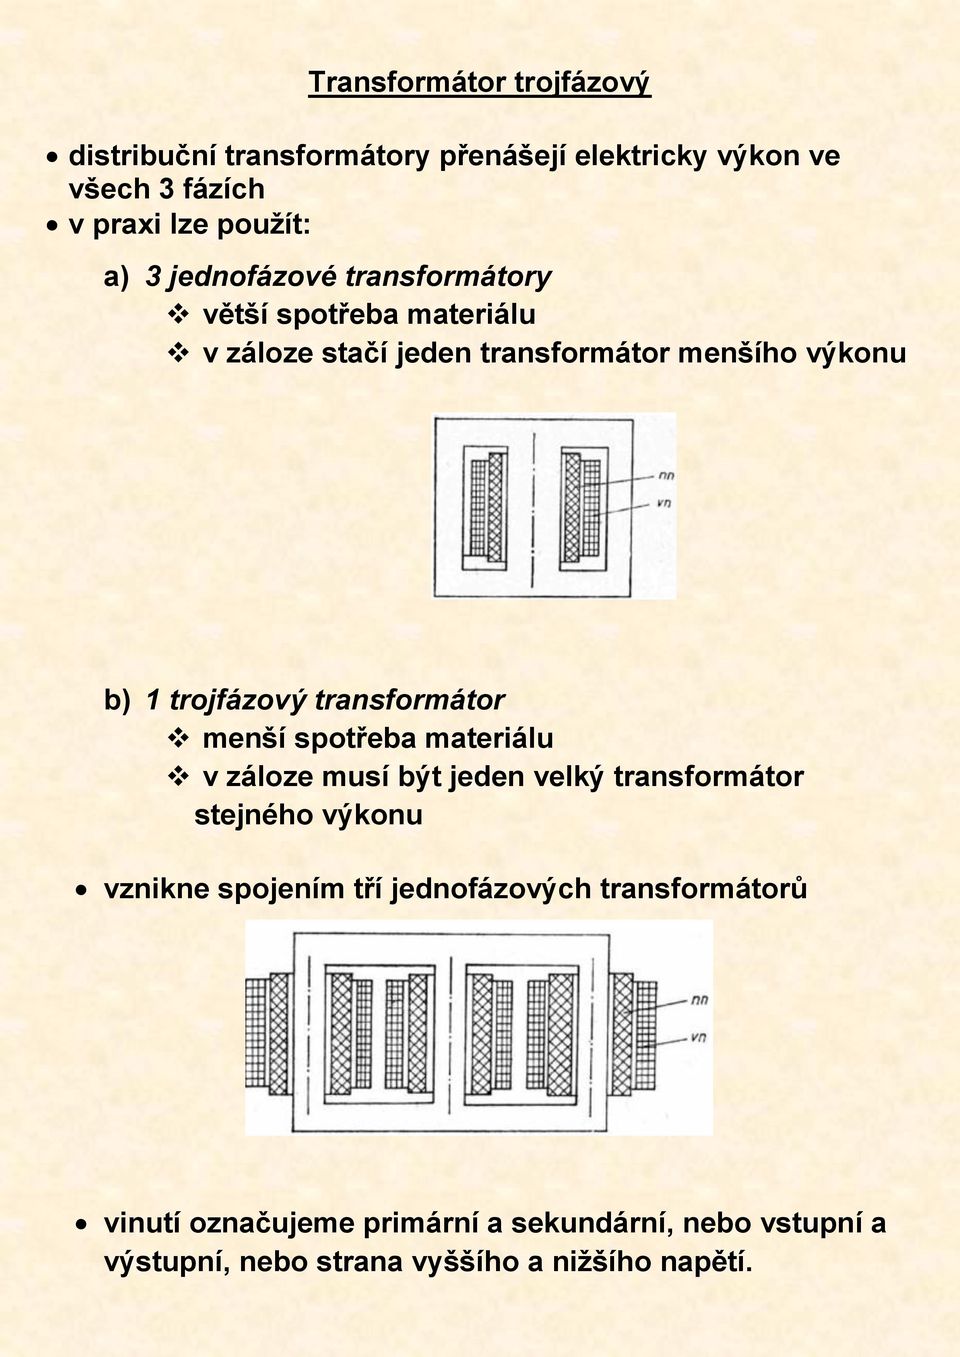 transformátor menší spotřeba materiálu v záloze musí být jeden velký transformátor stejného výkonu vznikne spojením tří